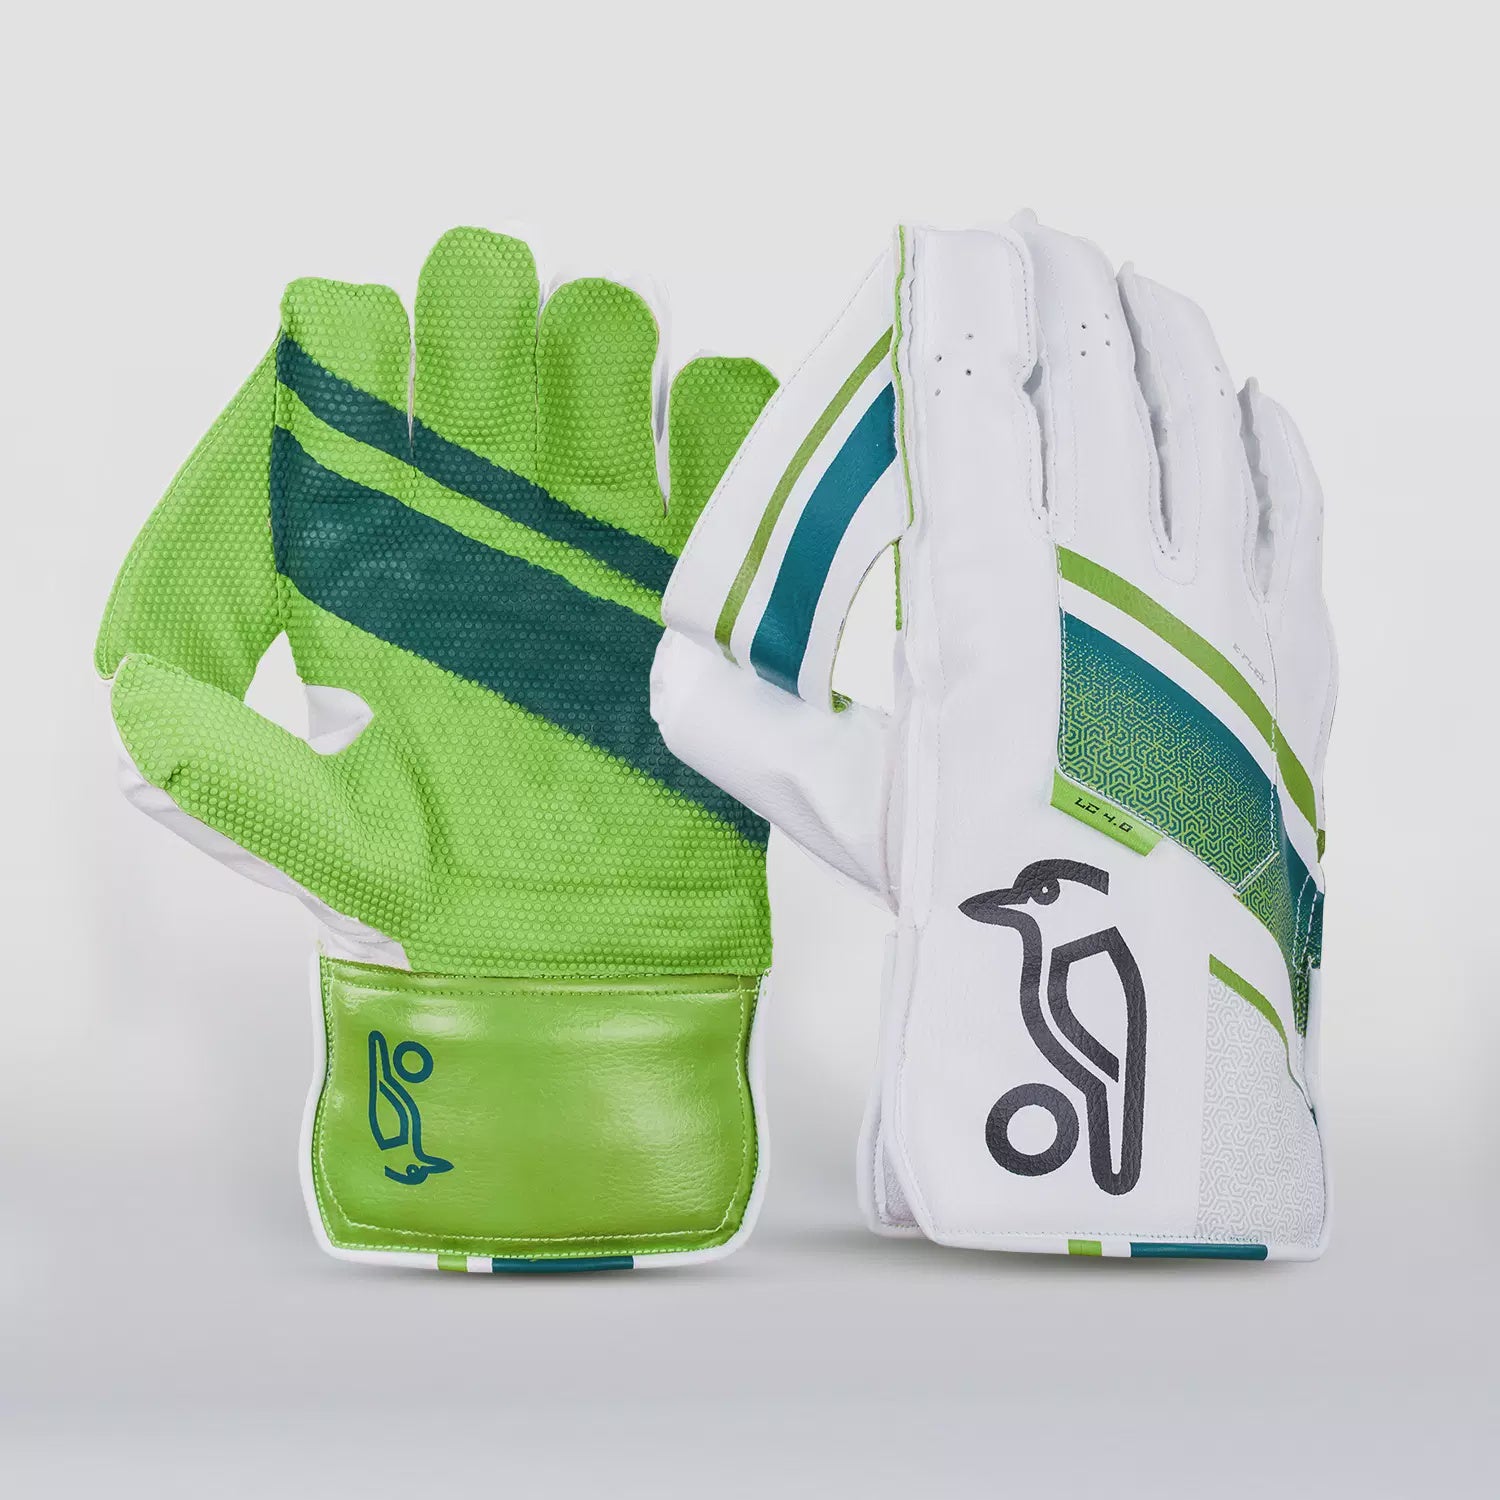 Kookaburra LC 4.0 Wicketkeeping Gloves